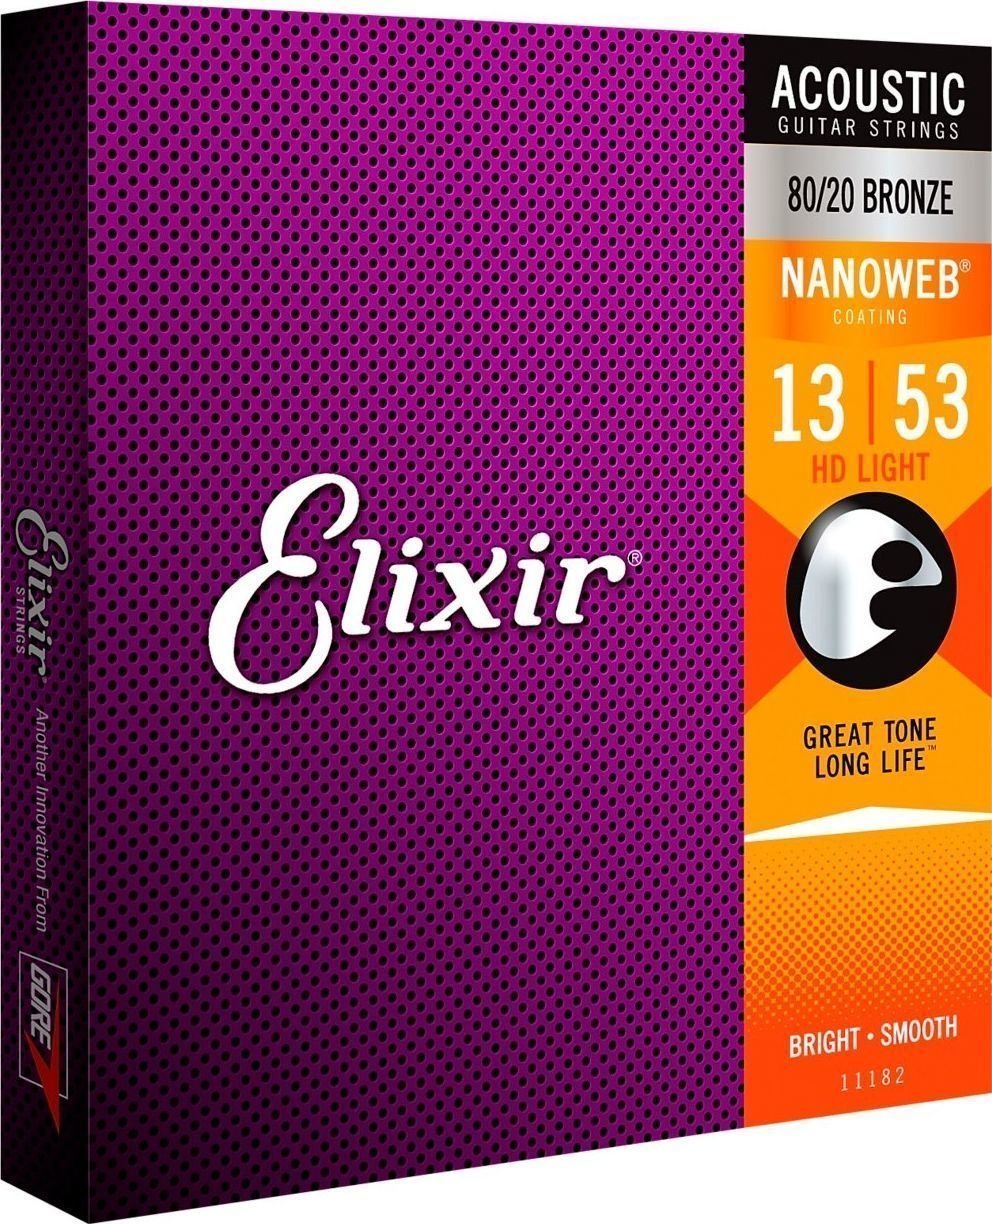 Struny do gitary akustycznej Elixir 11182 Nanoweb 13-53